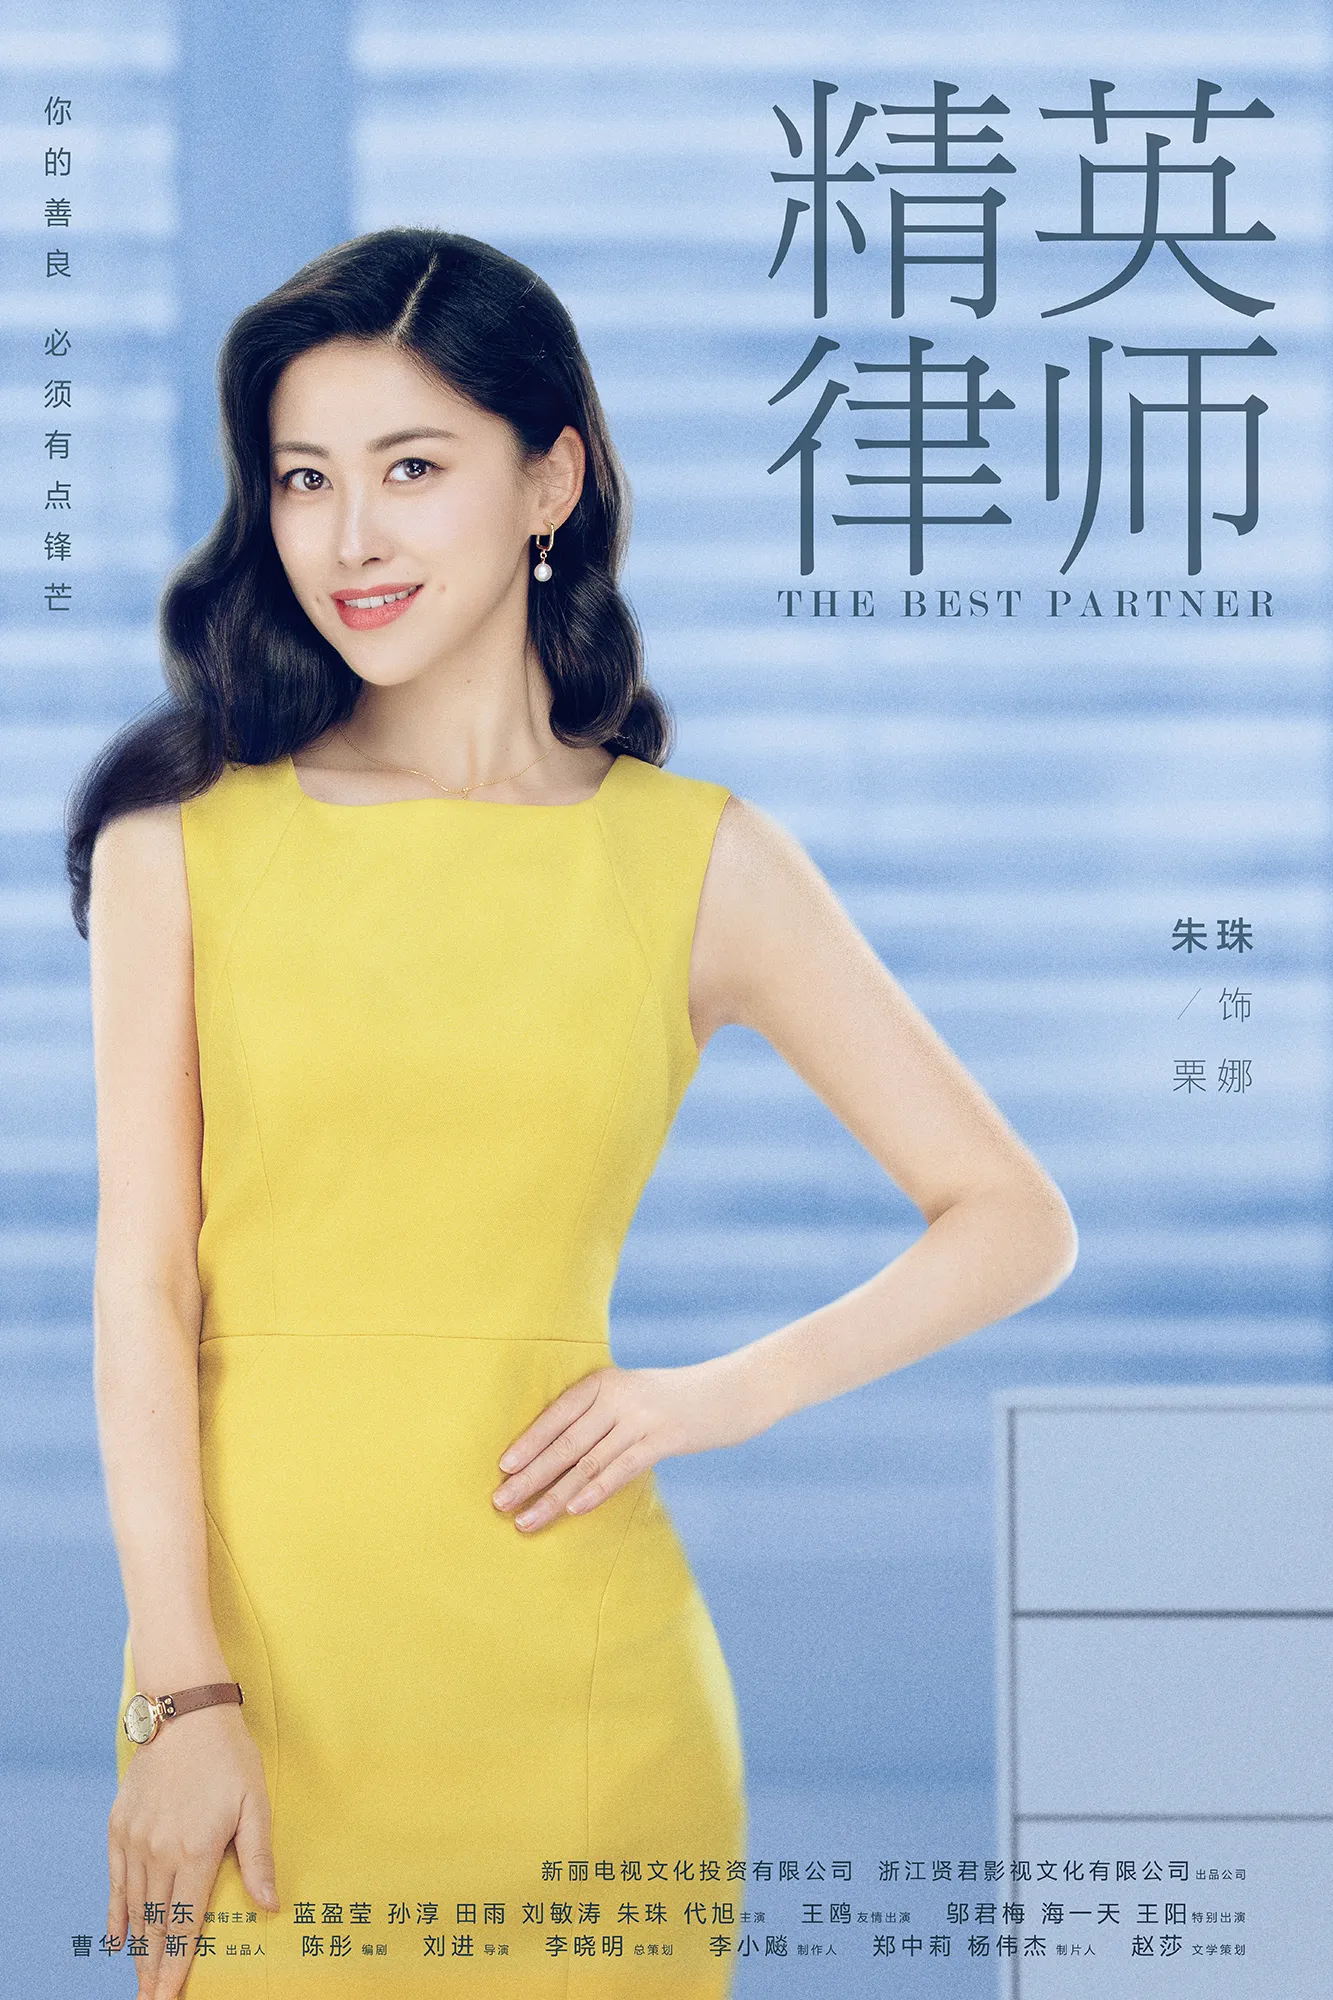 6. Zhu Zhu (actress) 饰栗娜.jpg